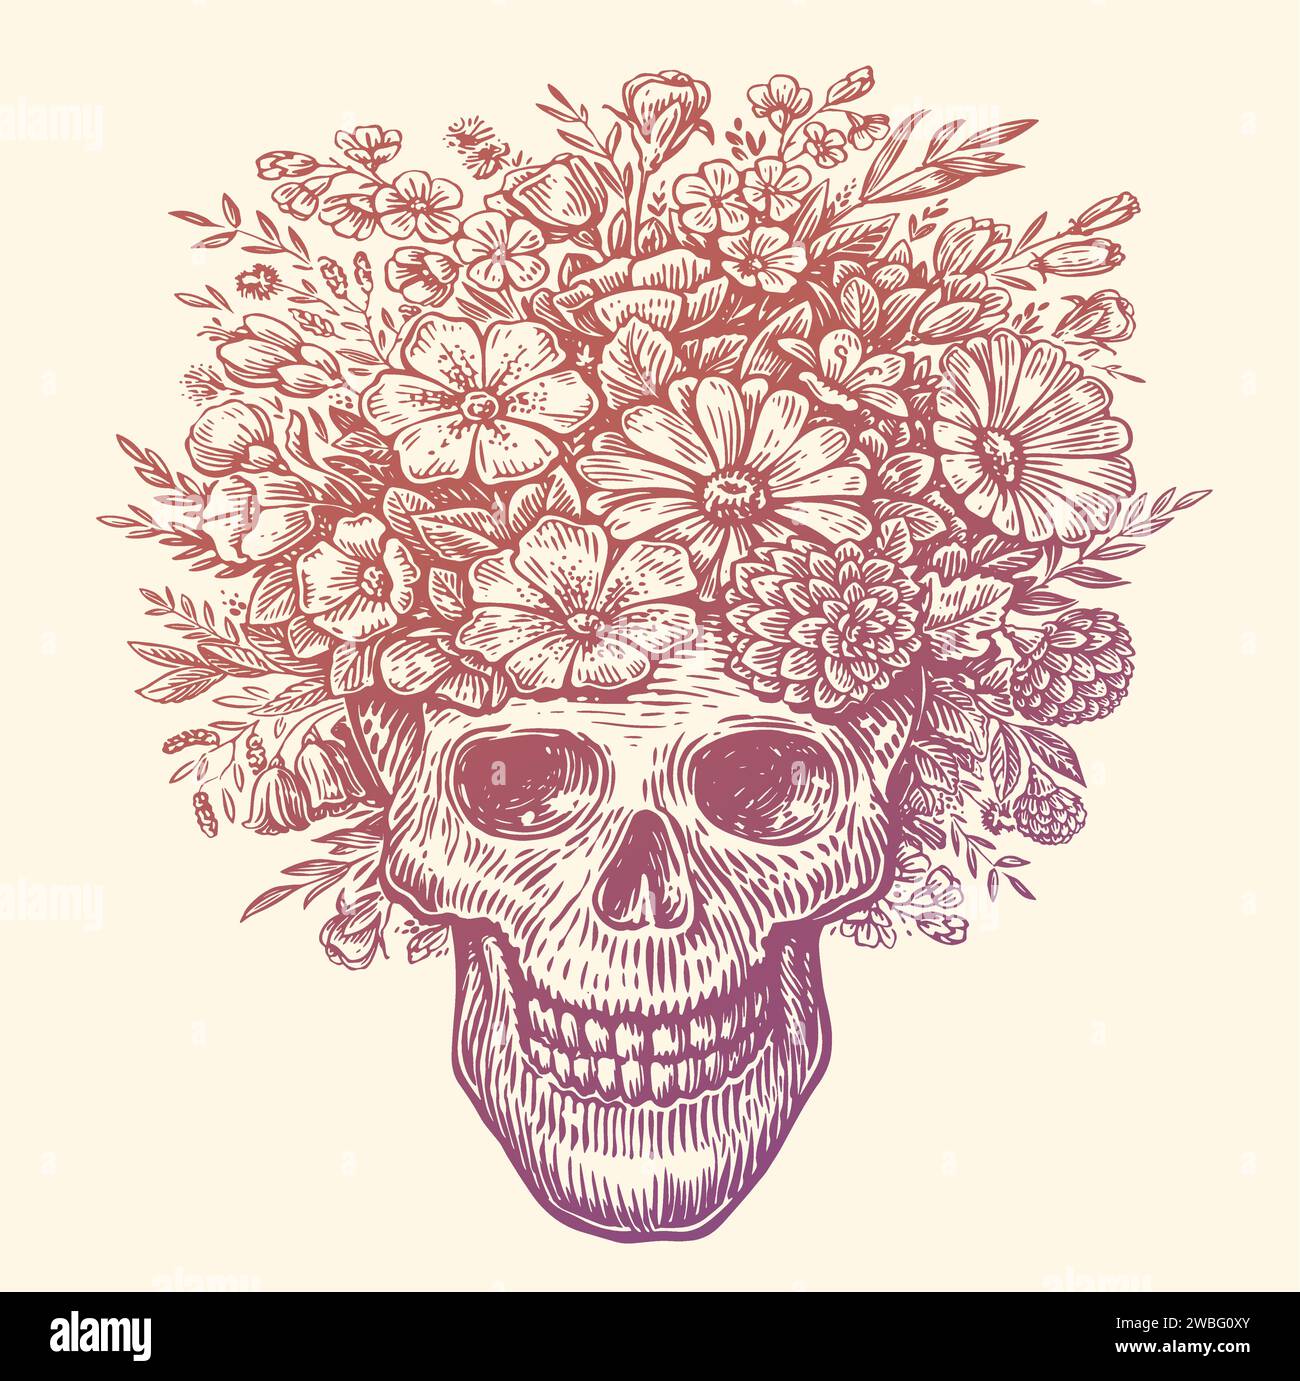 Crâne humain avec une couronne de fleurs sur la tête. Illustration vectorielle dessinée à la main Illustration de Vecteur